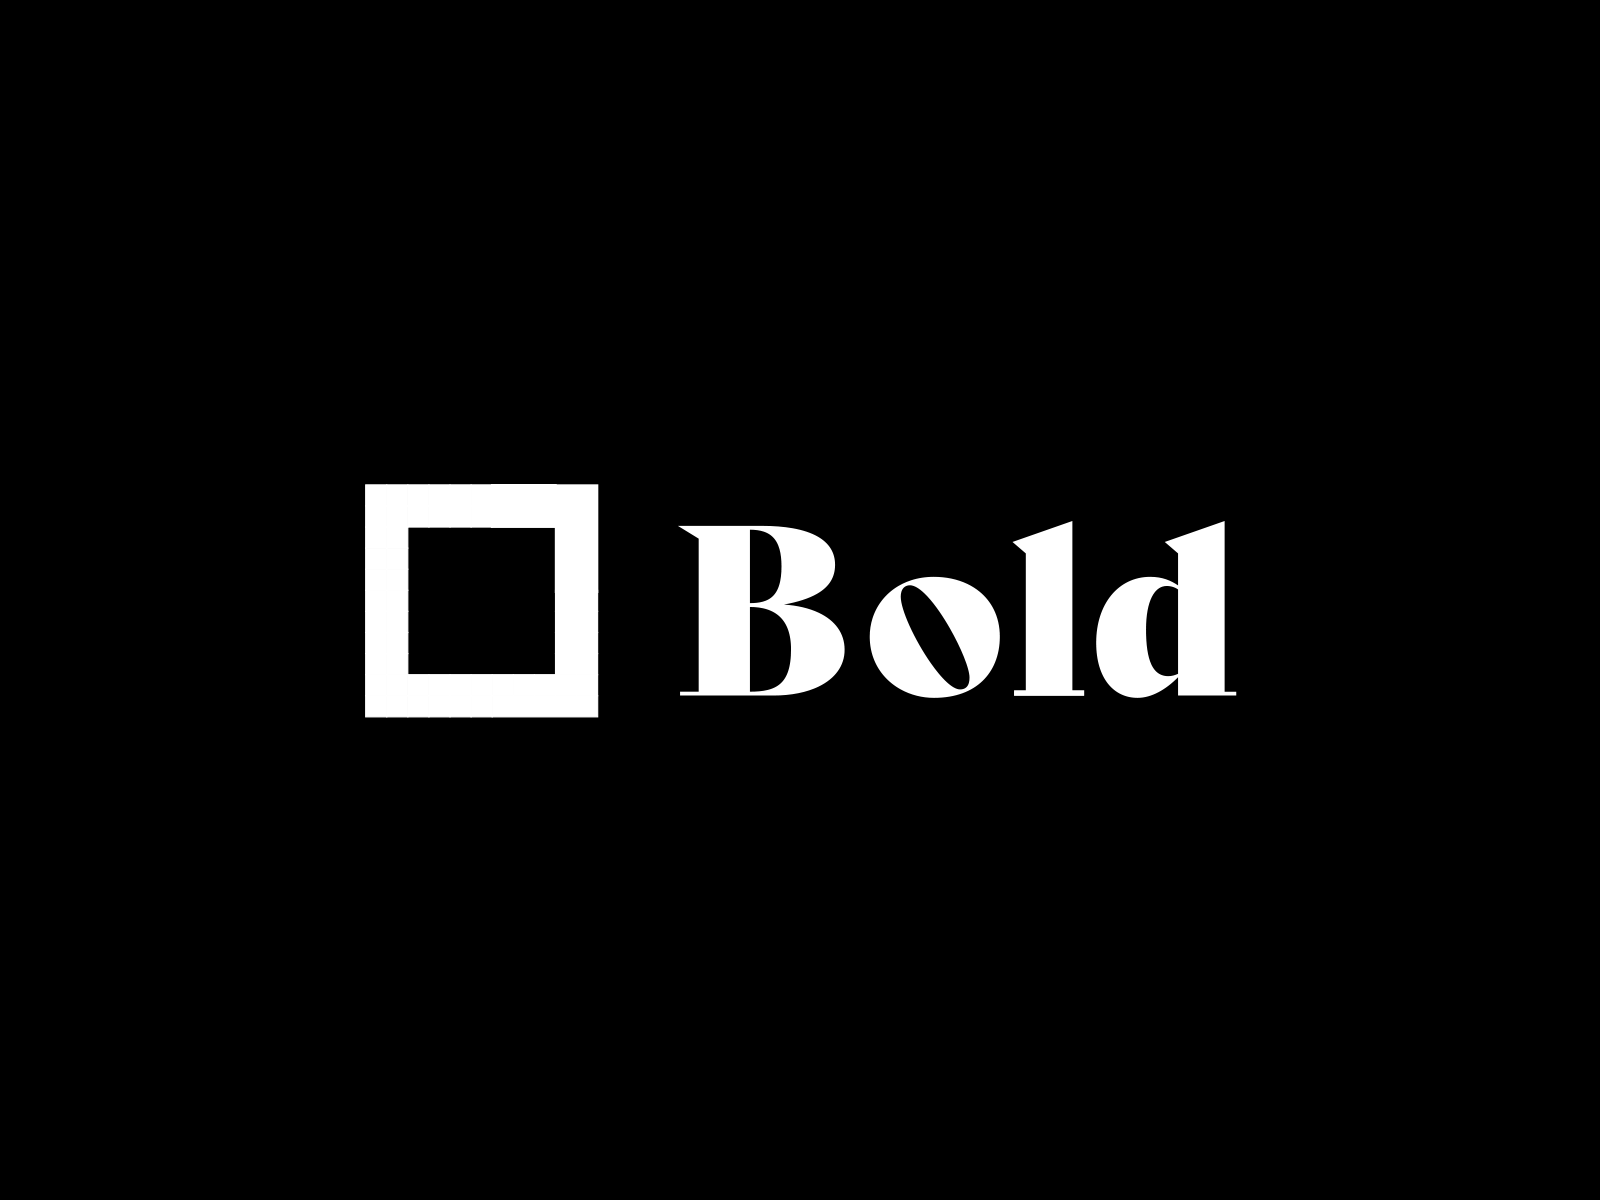 Bold Banking logo animated logo animation brand and identity brand designer brand identity branding branding agency branding and identity icon letterform logo logo design logo designer logomark logotype mark symbol visual identity